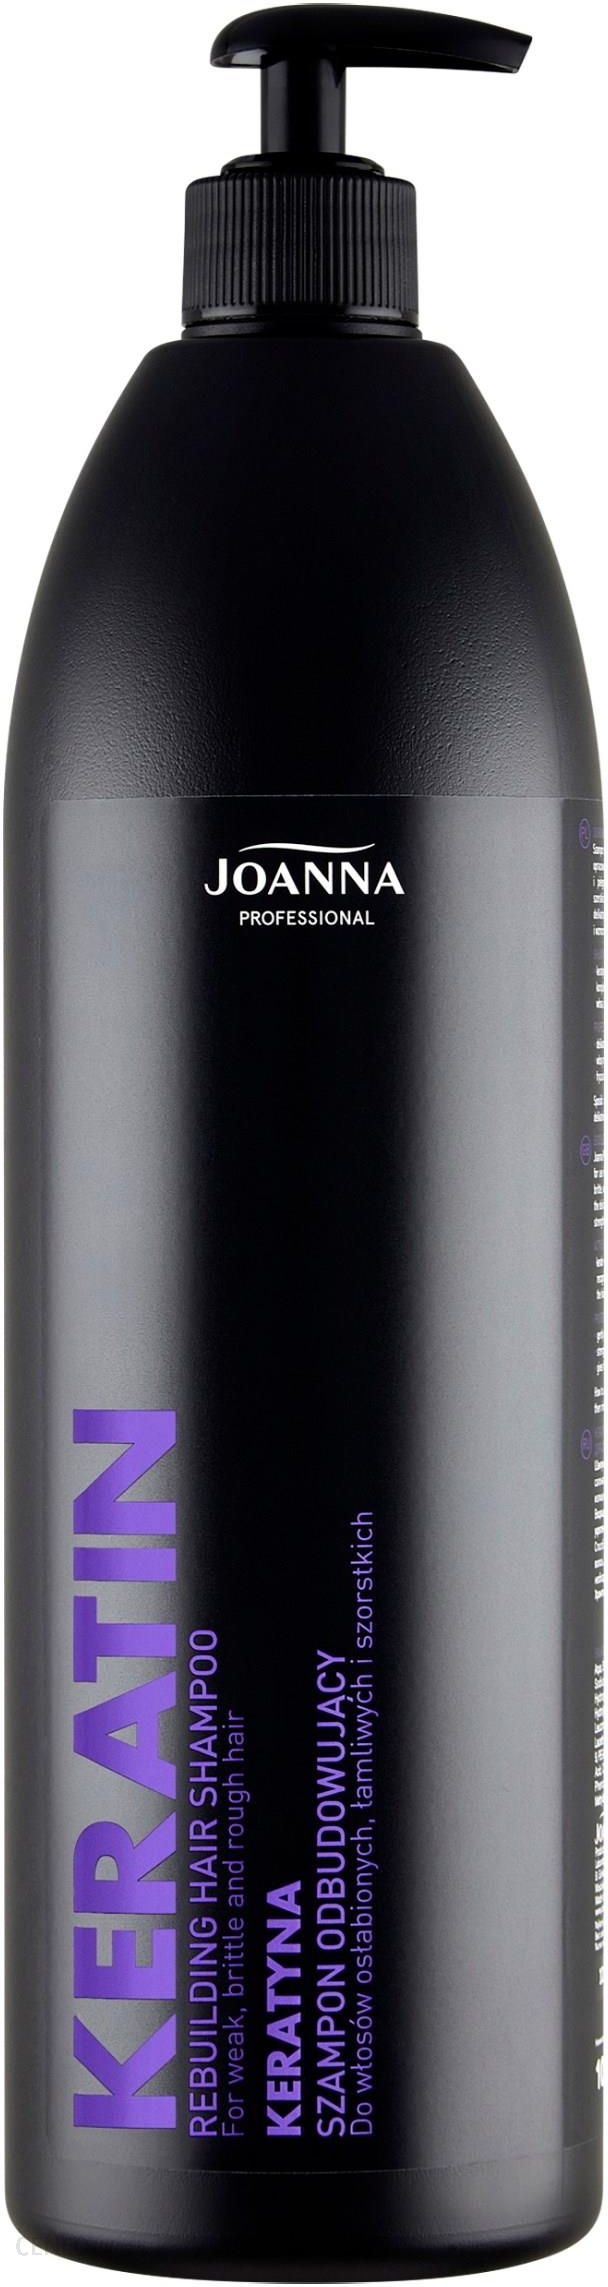 joanna szampon odbudowujący z keratyną